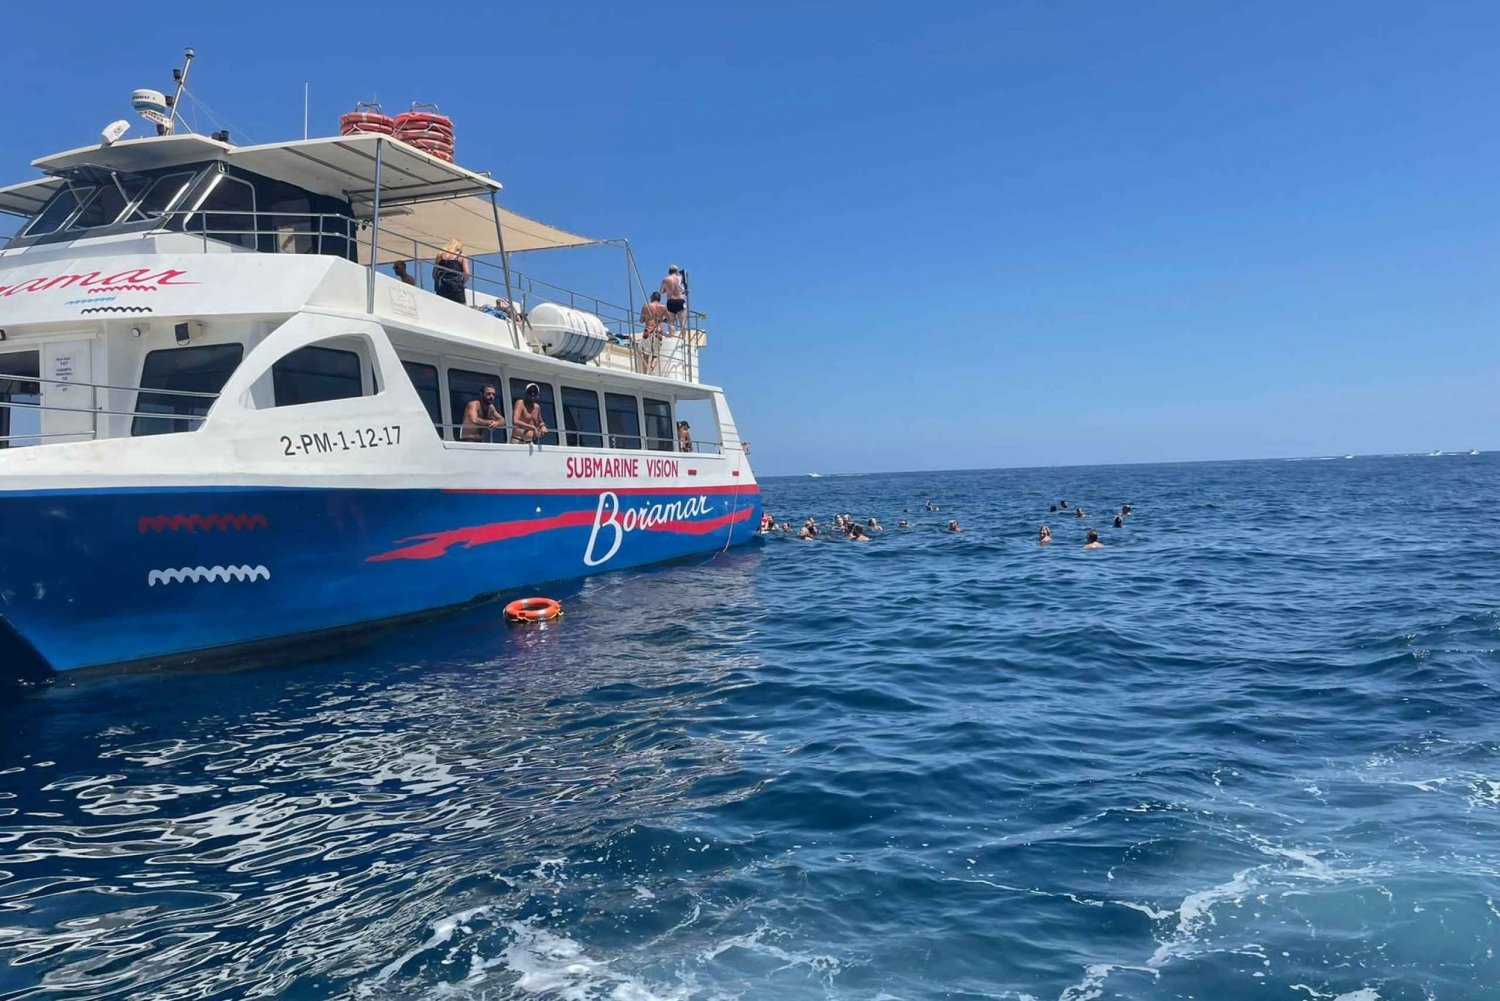 Javea: Portitxol Insel Motor-Katamaran Ausflug mit Paella